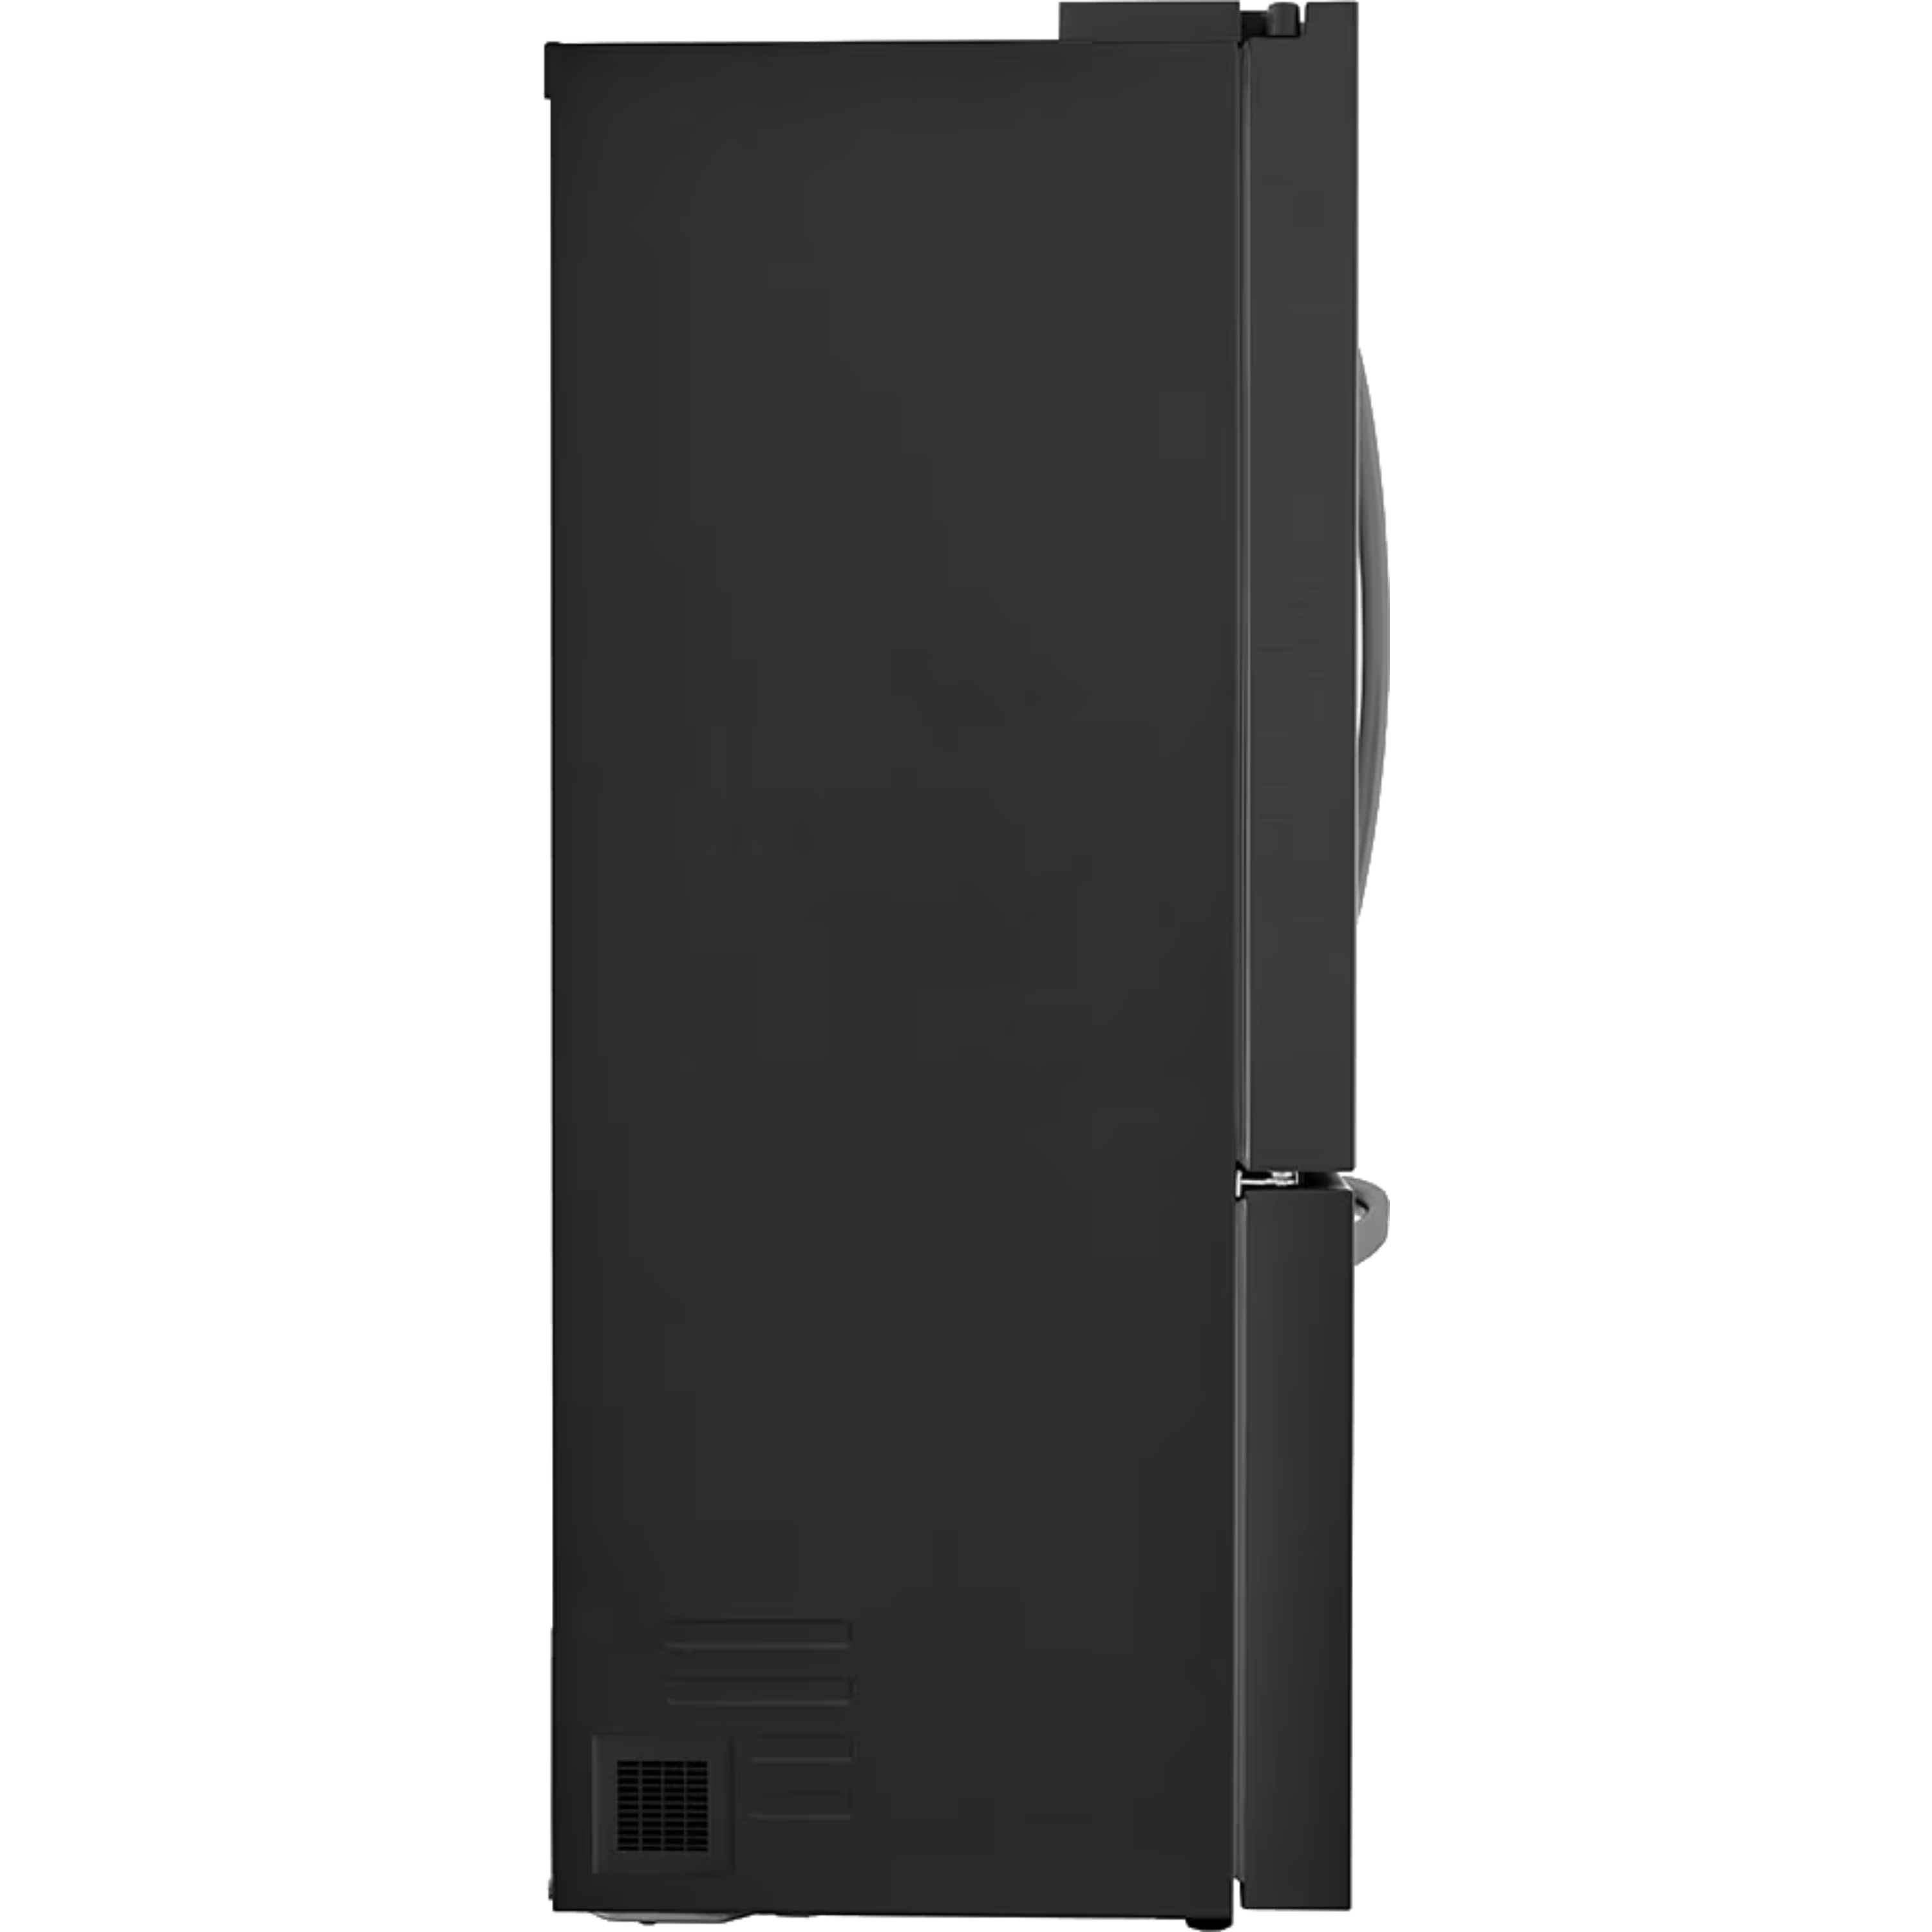 מקרר 3 דלתות מקפיא תחתון 750 ליטר LG GR-B278SE עם התקן שבת מובנה - גימור נירוסטה מושחרת אחריות ע